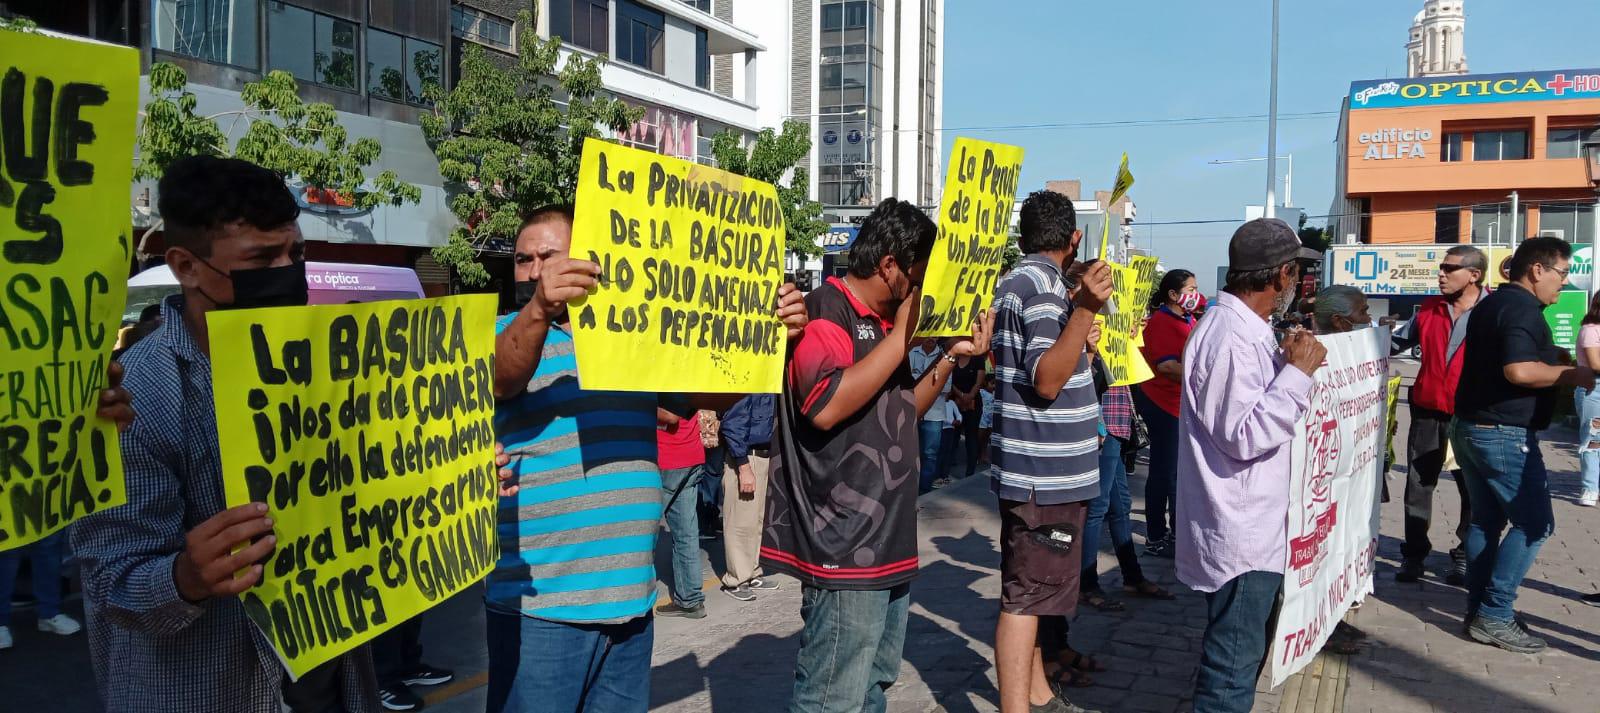 $!Pepenadores de Culiacán protestan contra posible privatización del basurón